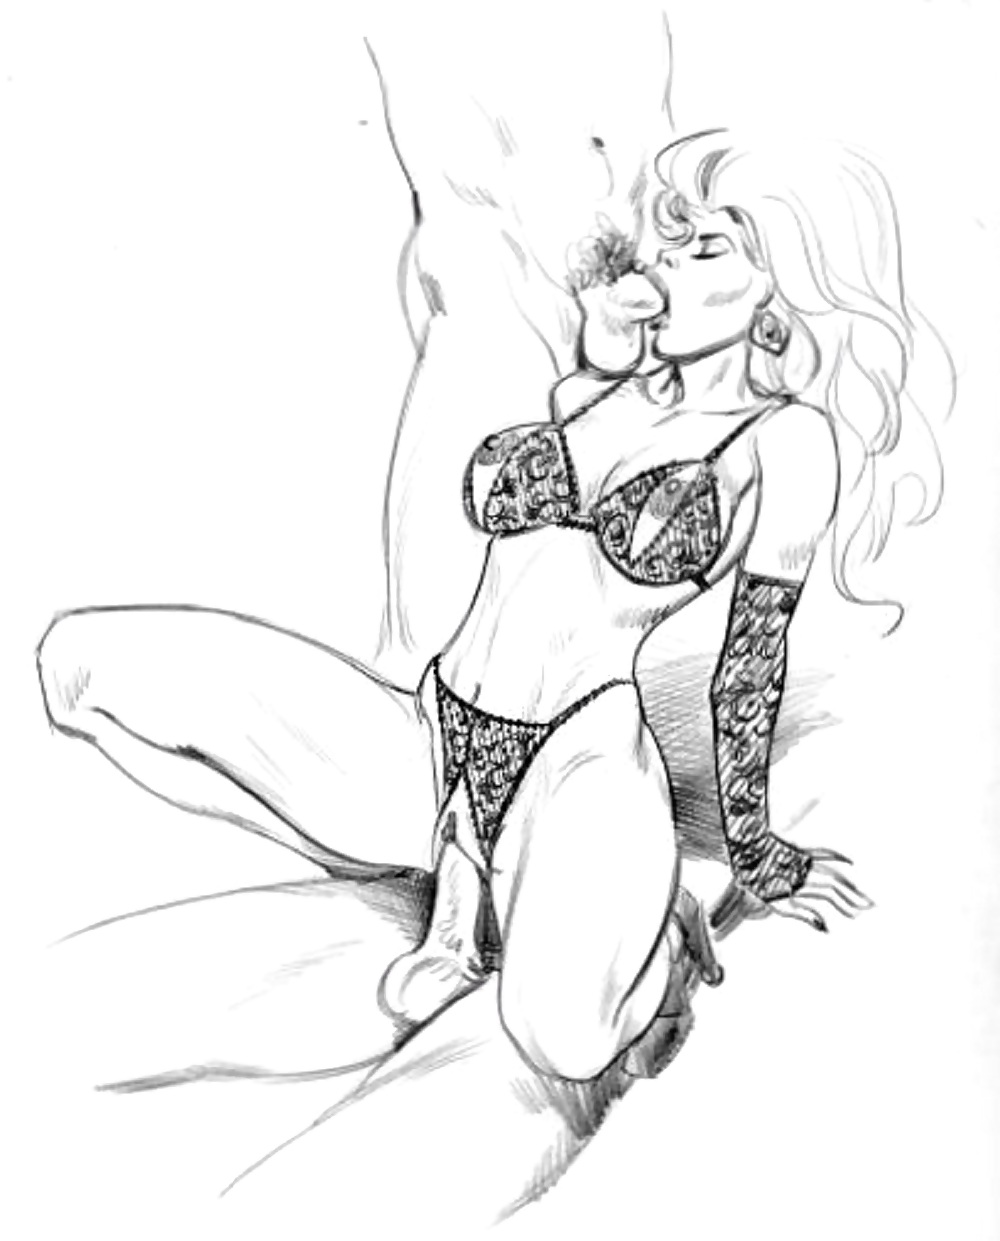 Cortoon - sex Zeichnungen - seks rysunki #37132614